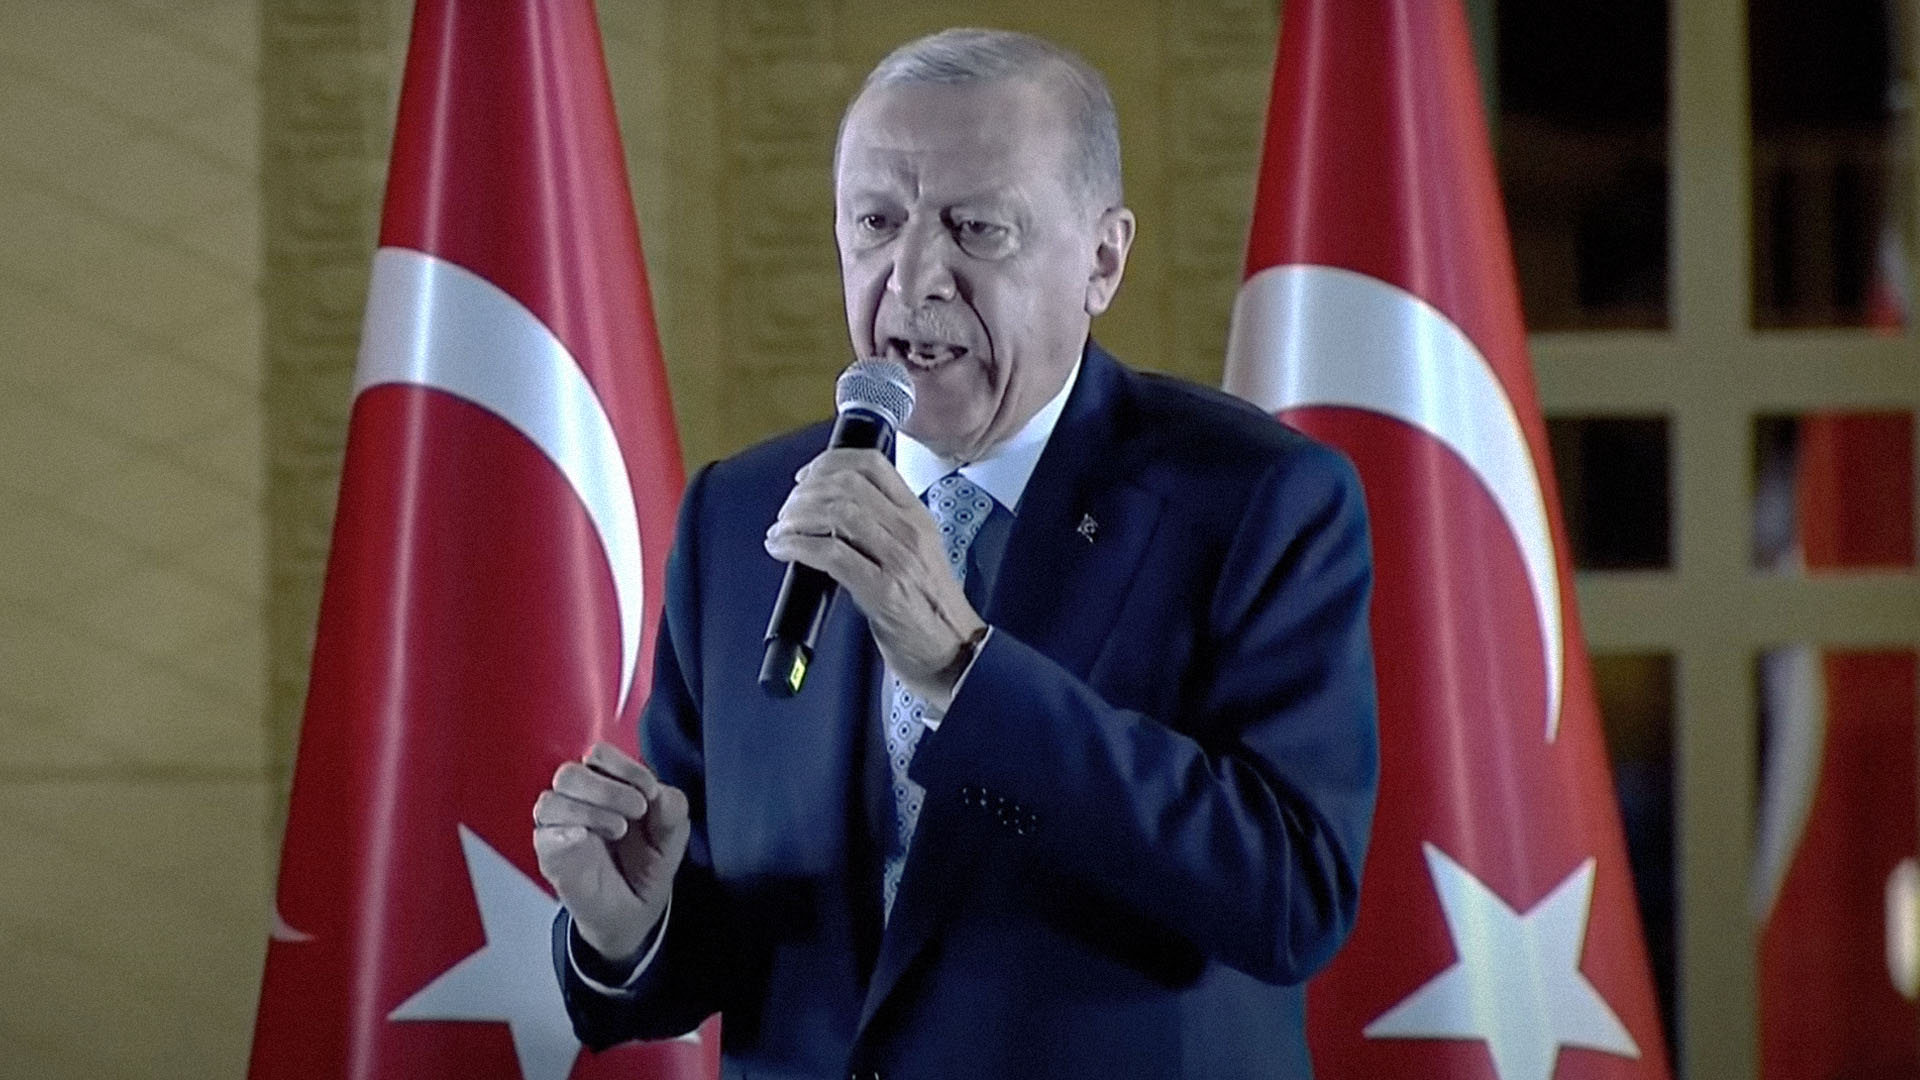 صورة إردوغان يطمئن اللاجئين أنه لن يرّحلهم سوى إلى المناطق التي يضمها لتركيا